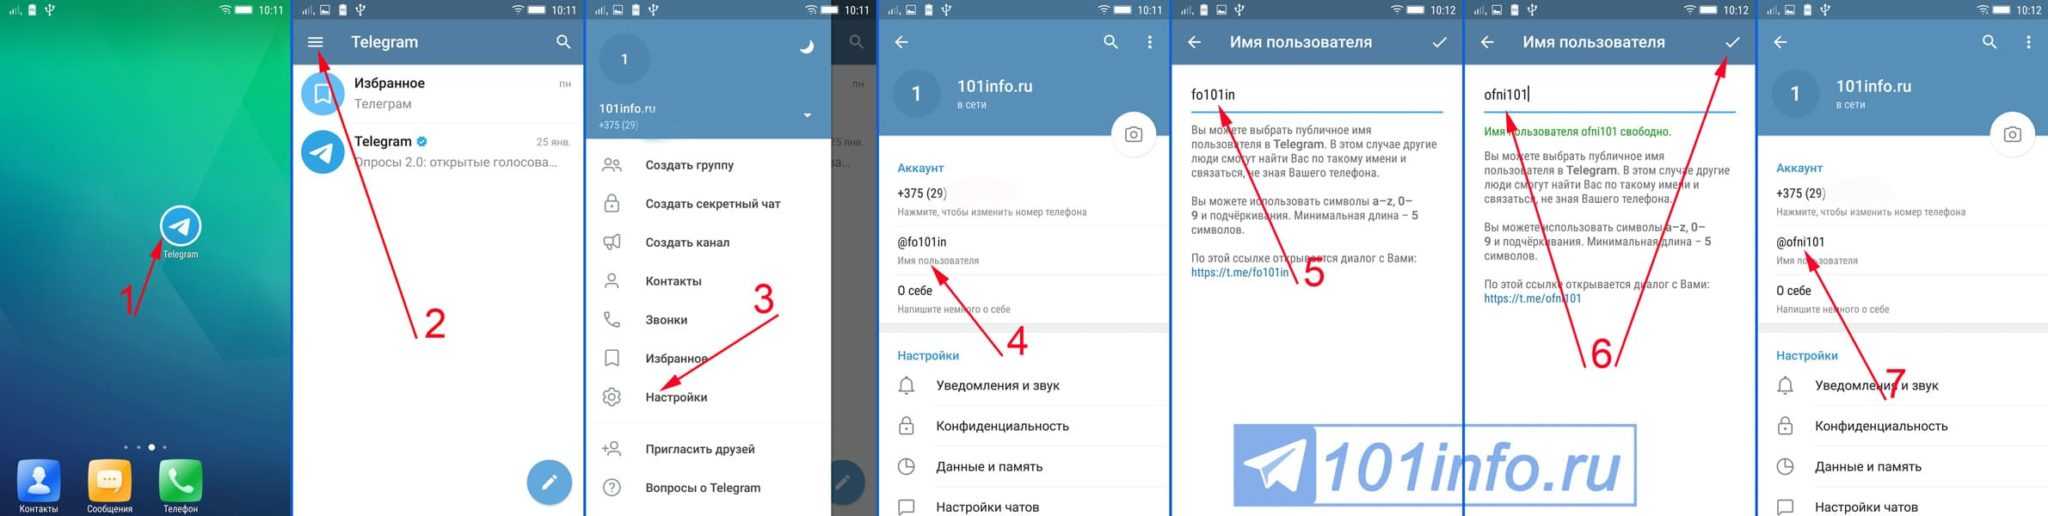 Телеграмм на английском языке как поменять на русский на андроиде фото 118